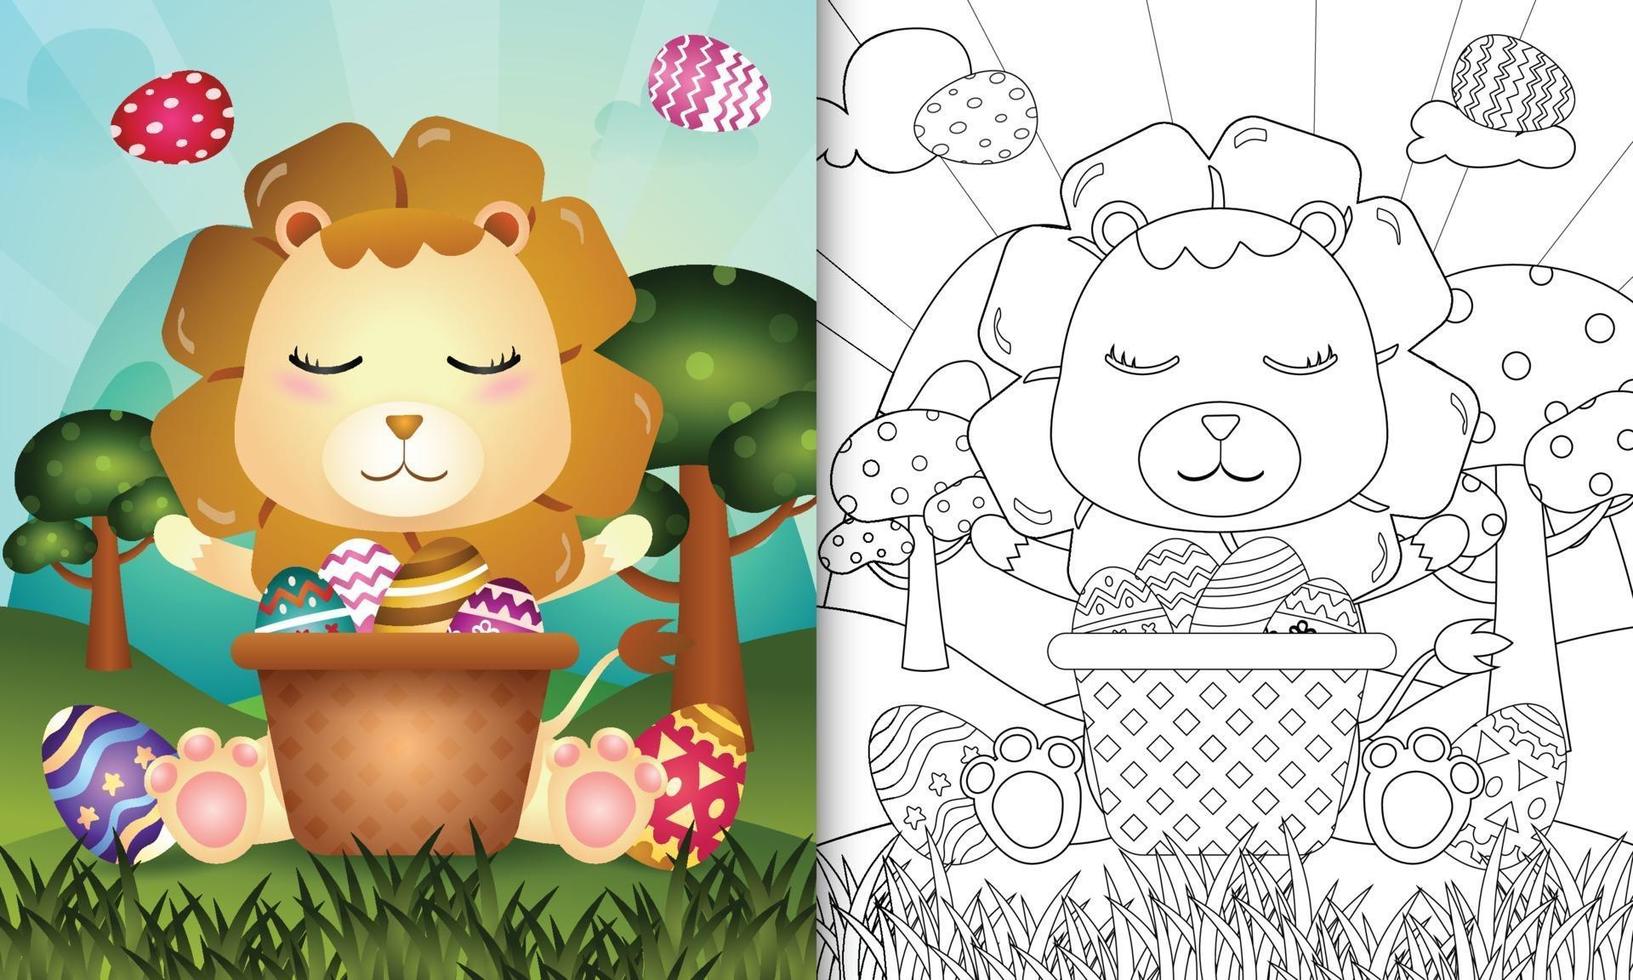 livro de colorir para crianças com tema feliz páscoa com ilustração de um leão fofo no ovo balde vetor